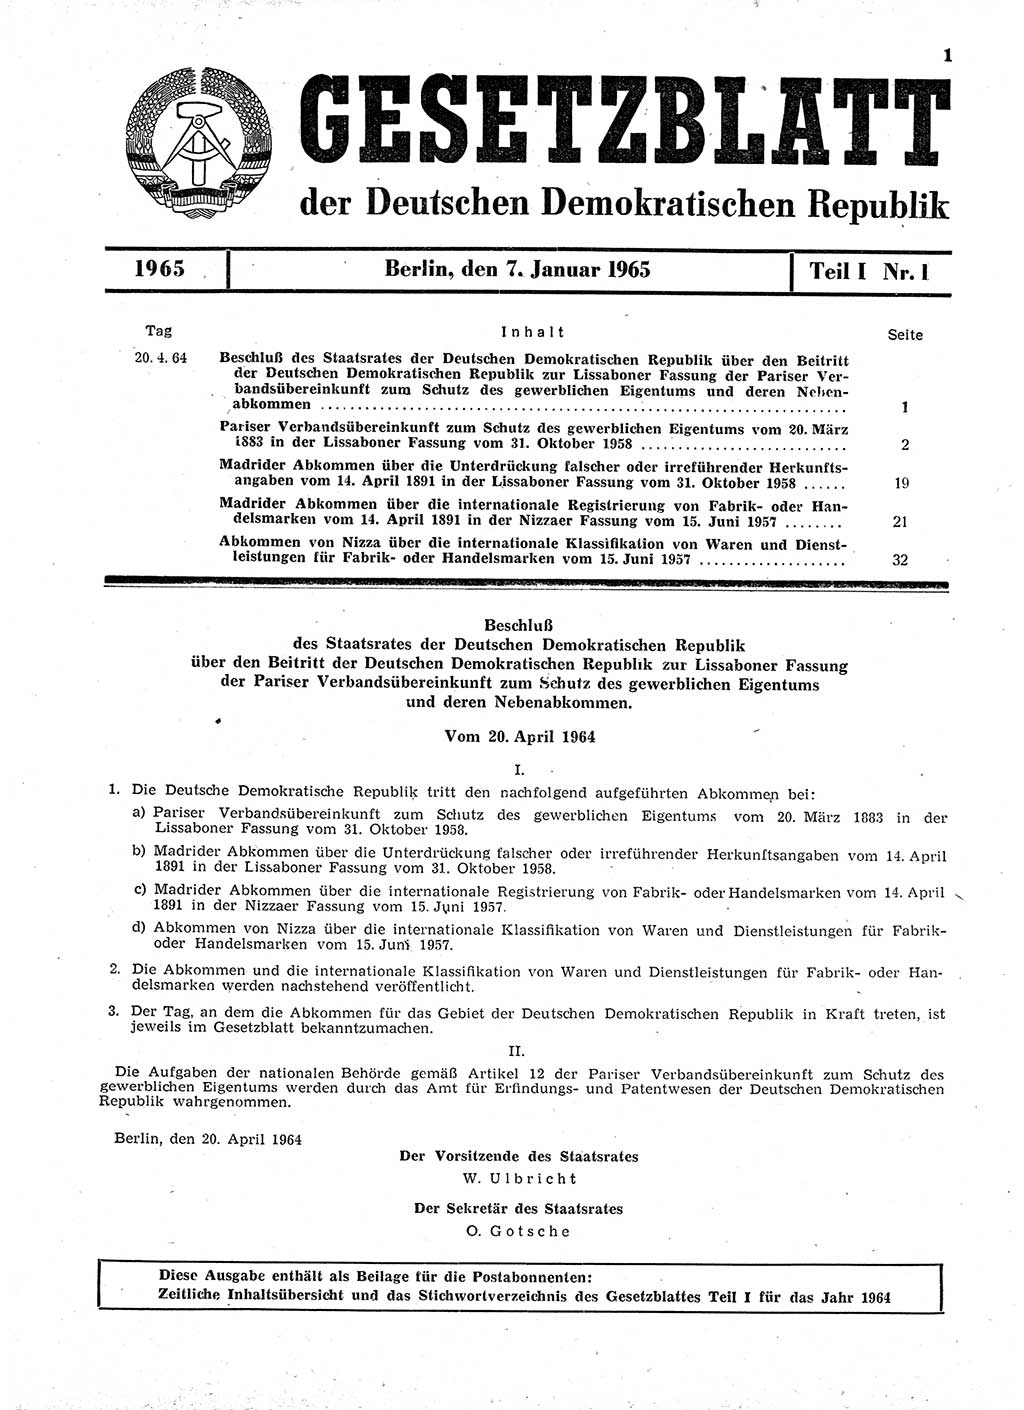 Gesetzblatt (GBl.) der Deutschen Demokratischen Republik (DDR) Teil Ⅰ 1965, Seite 1 (GBl. DDR Ⅰ 1965, S. 1)